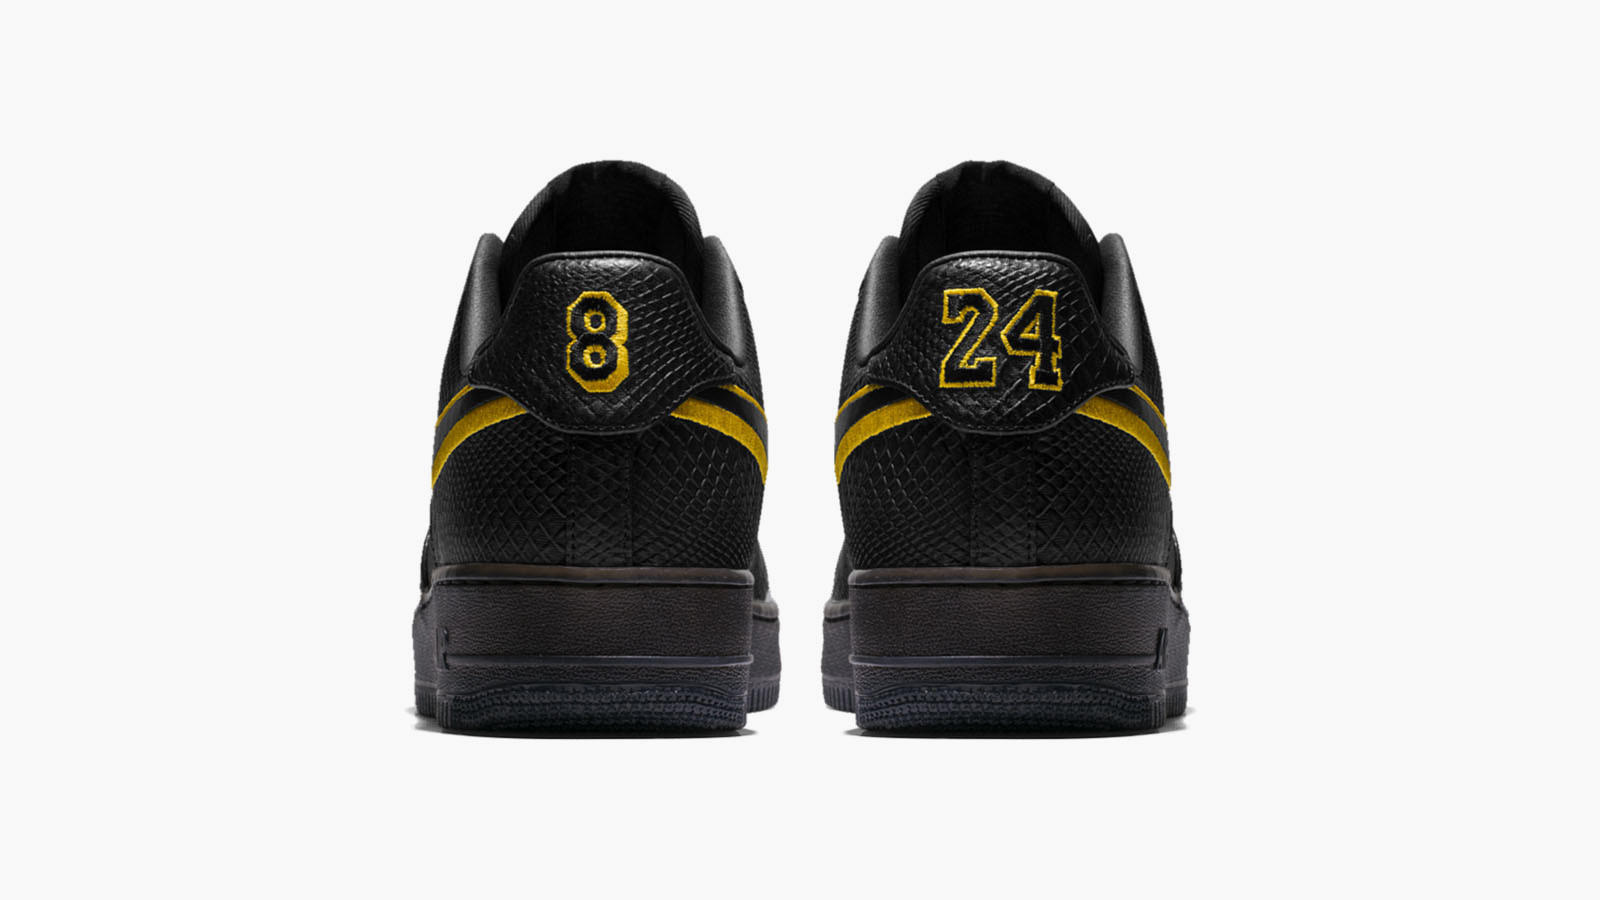 Nike's commemorative Kobe Bryant Black Mamba Air Force 1 sneakers move as fast as their namesake